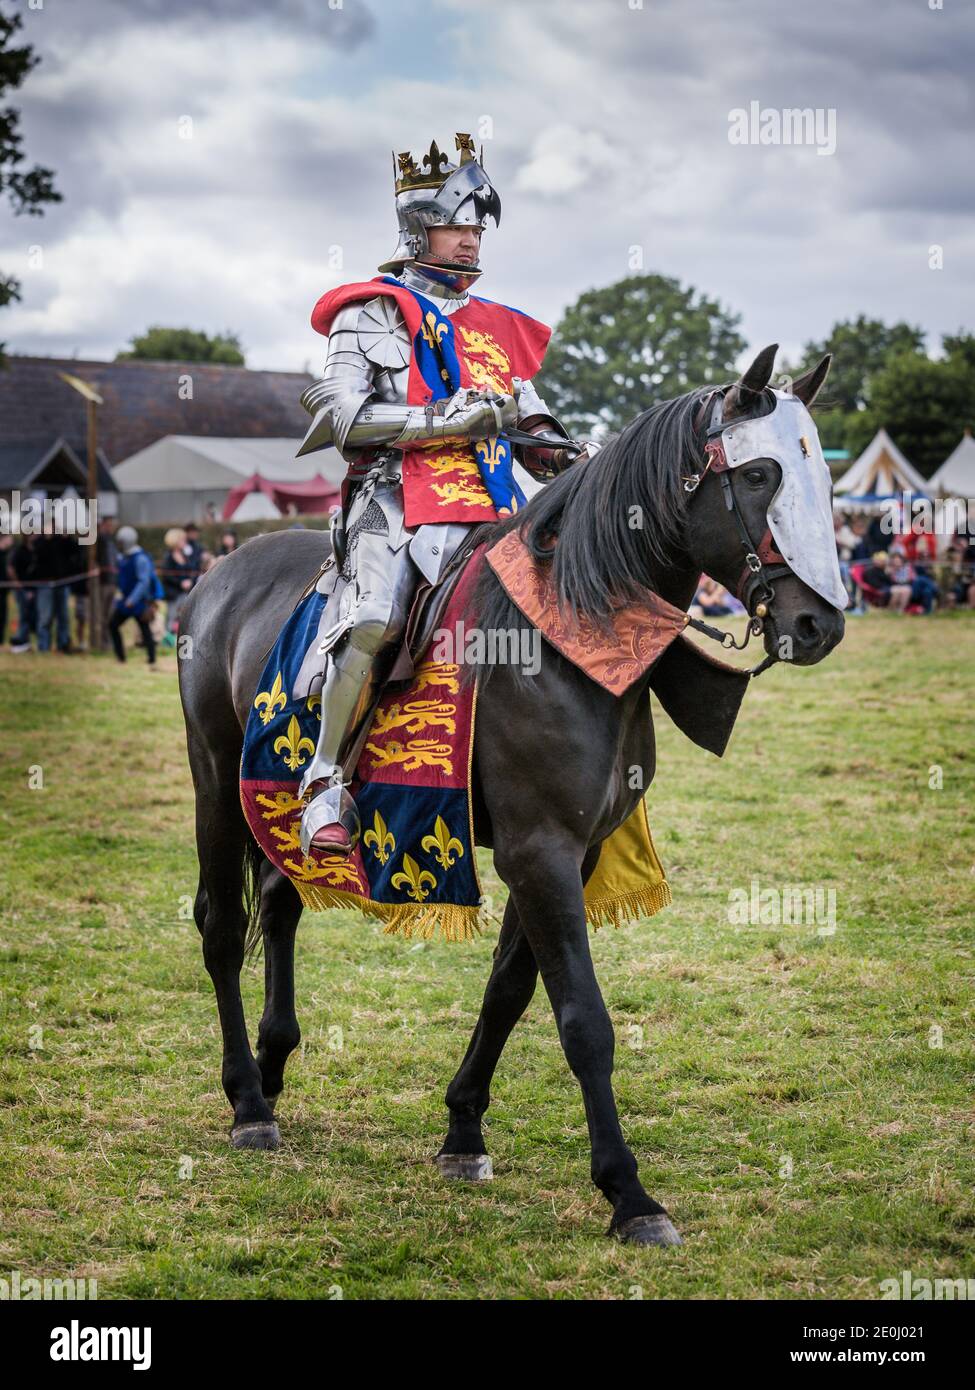 Ritter in Rüstung zu Pferd, Schlacht von Bosworth Field Reenactment, Market Bosworth, Leicestershire, Großbritannien Stockfoto